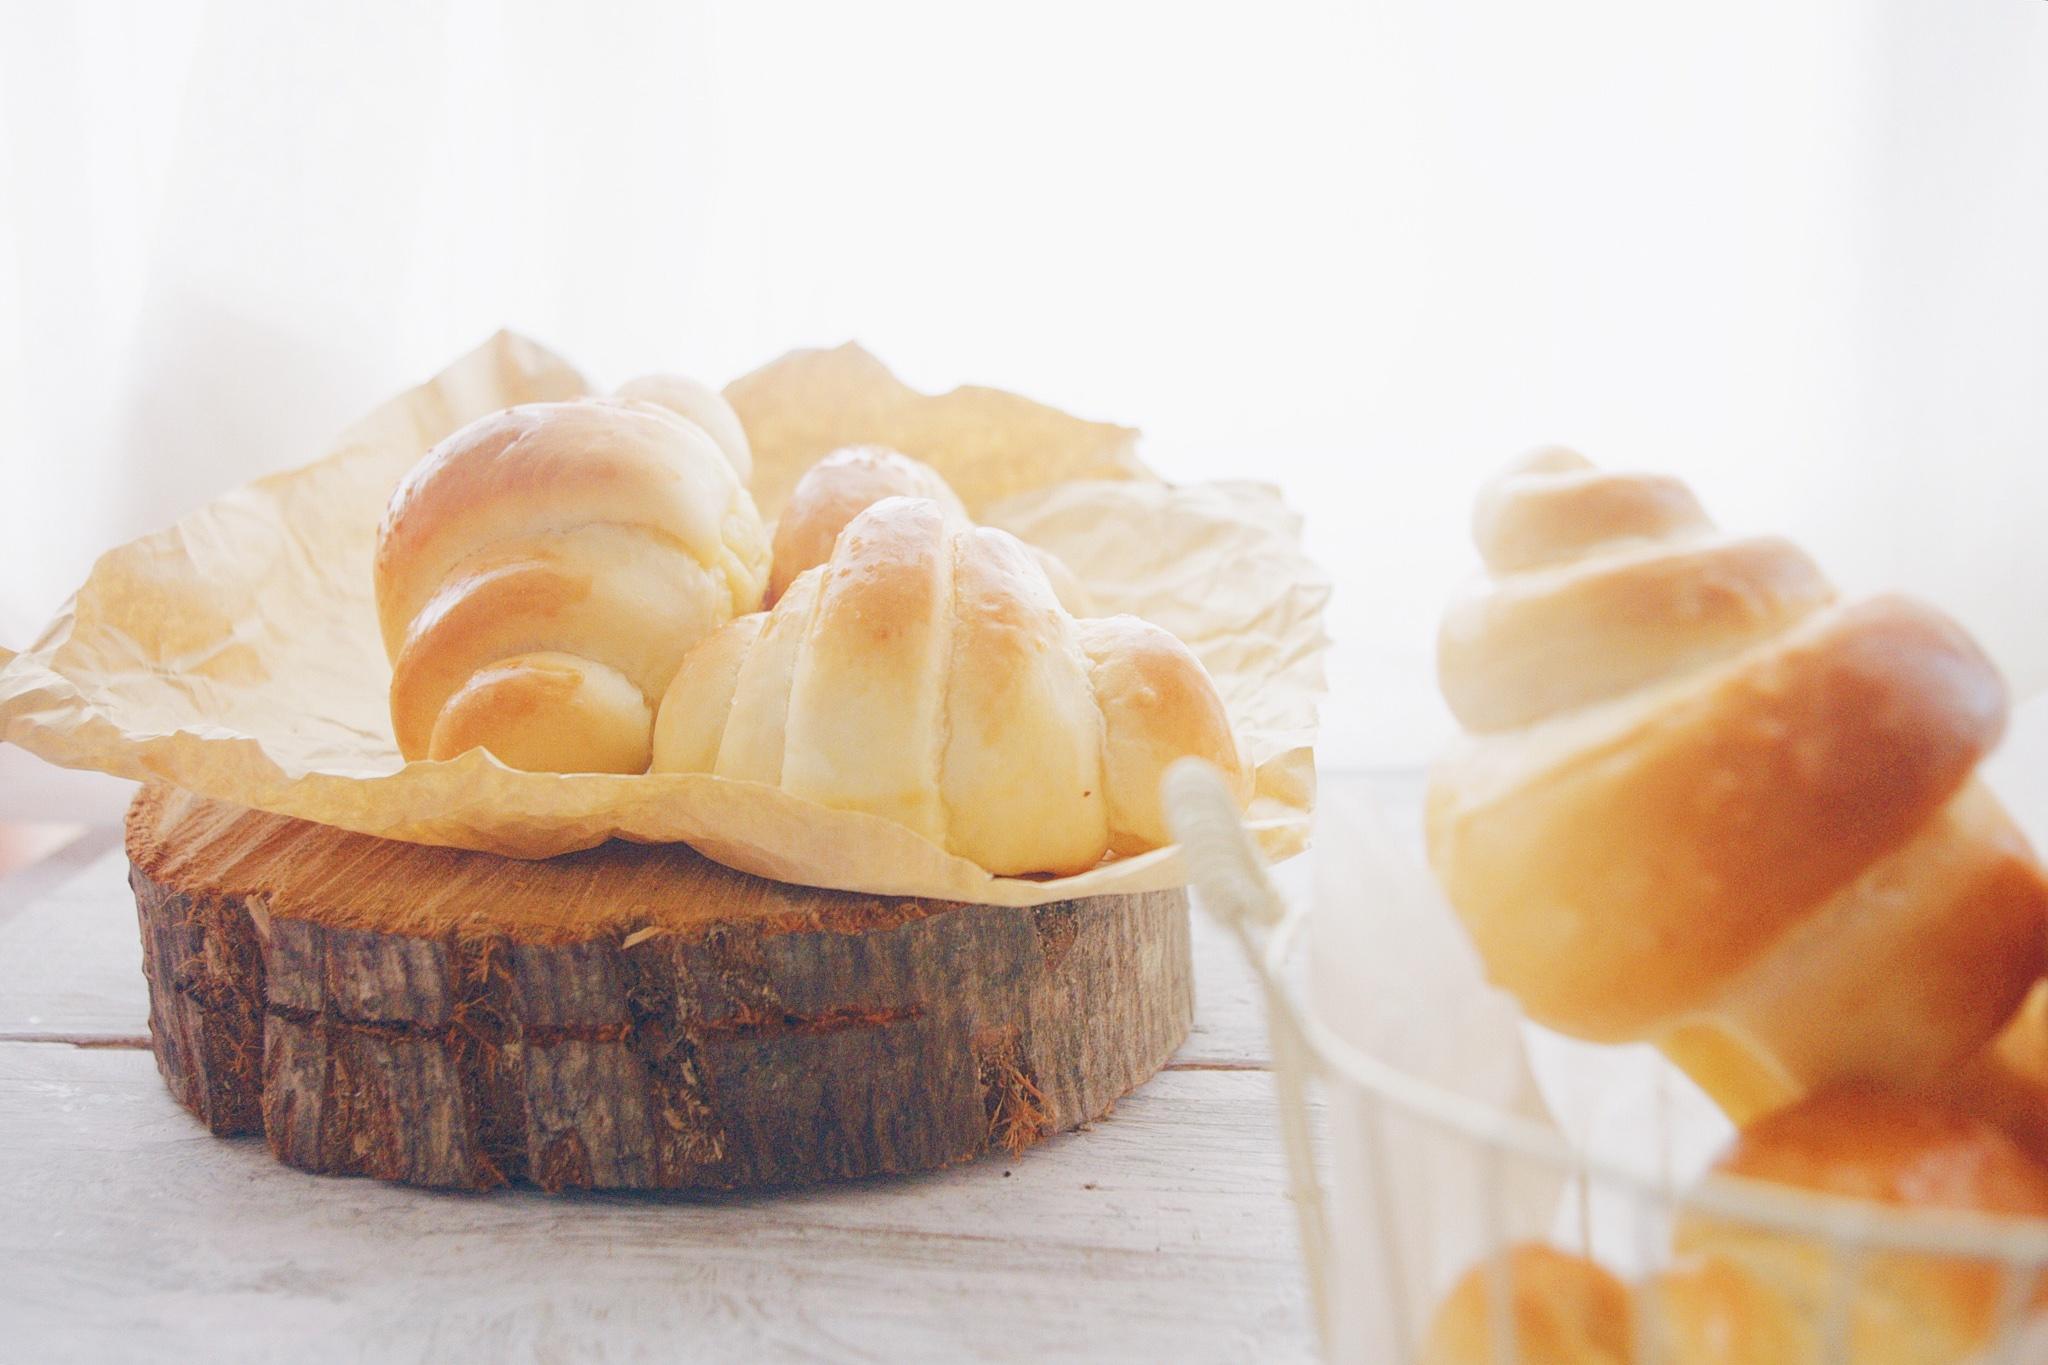 【自留】cupcake/muffin/bread/pudding的封面